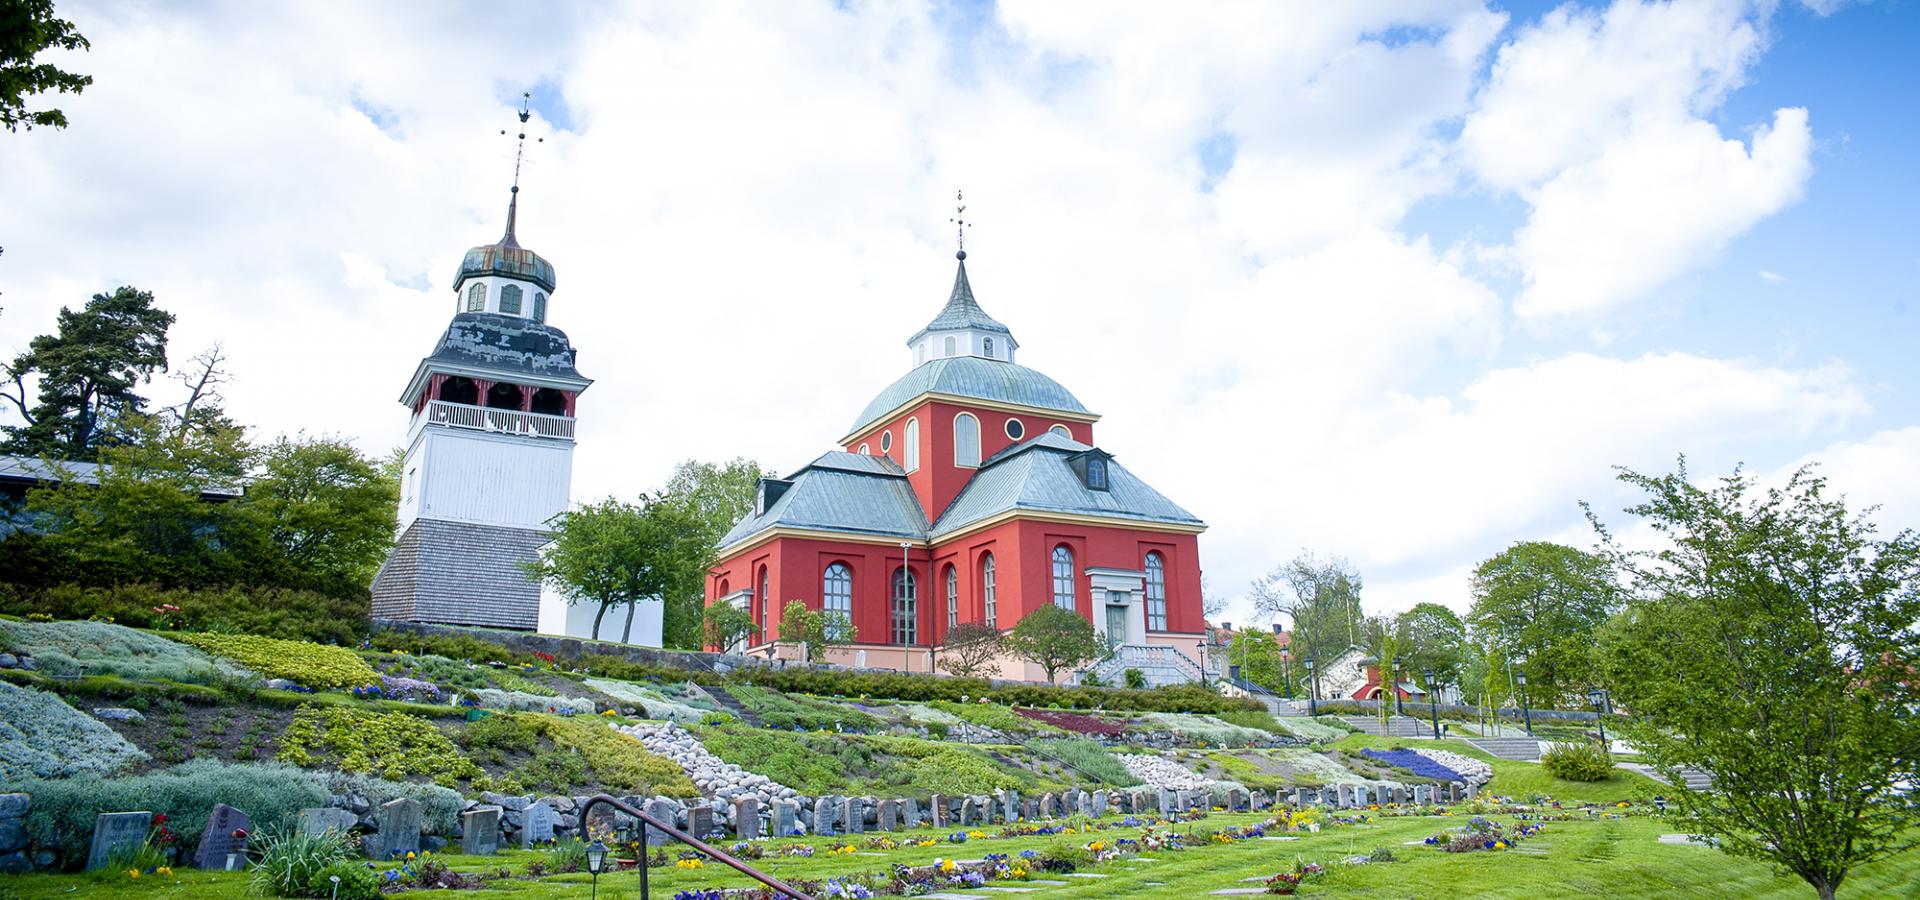 Röda kyrkan Ulrika Eleonora i Söderhamns centrum